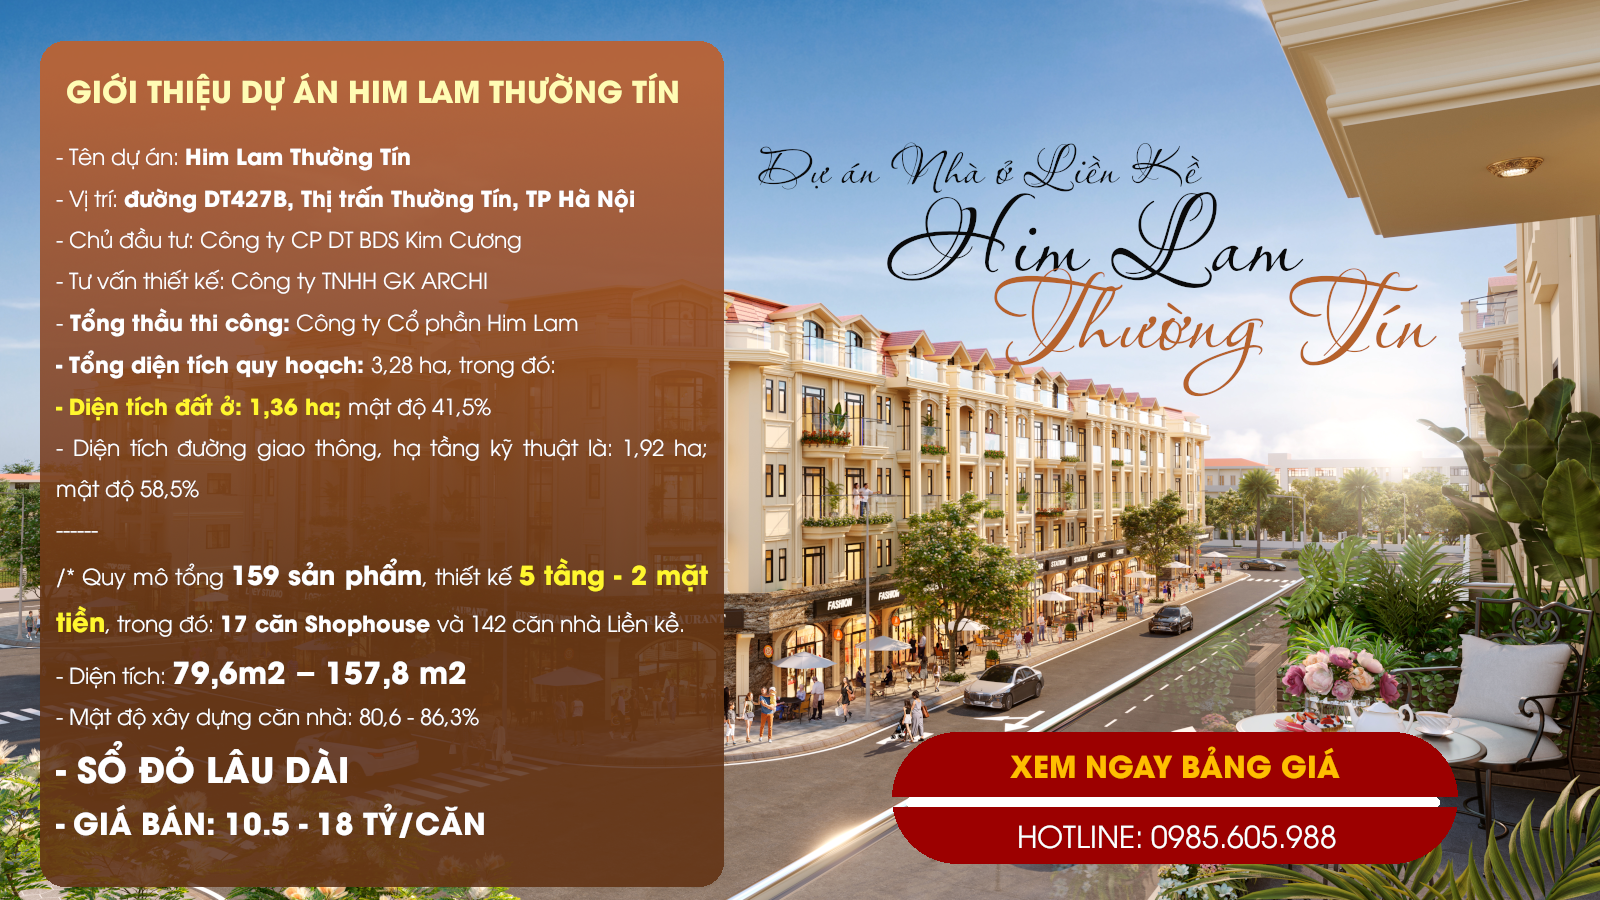 Giới thiệu dự án Him Lam Thường Tín Hà Nội